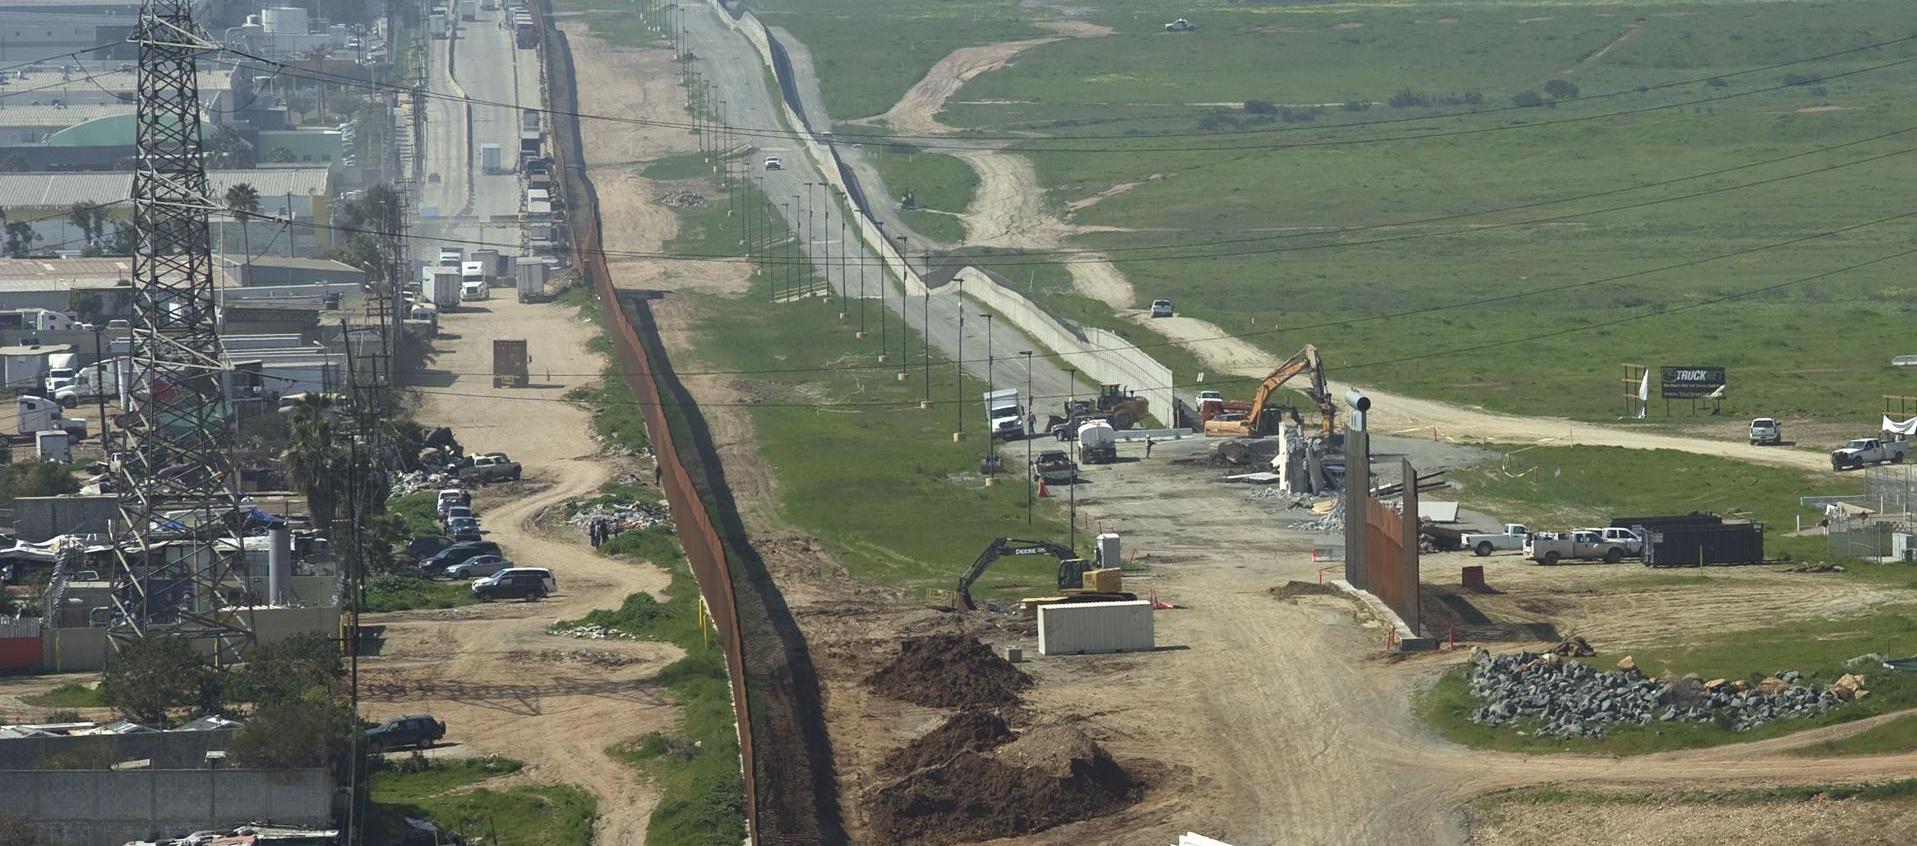 Vista general donde aparece el muro fronterizo entre México y Estados Unidos en la frontera de Tijuana (México) y San Diego (California)